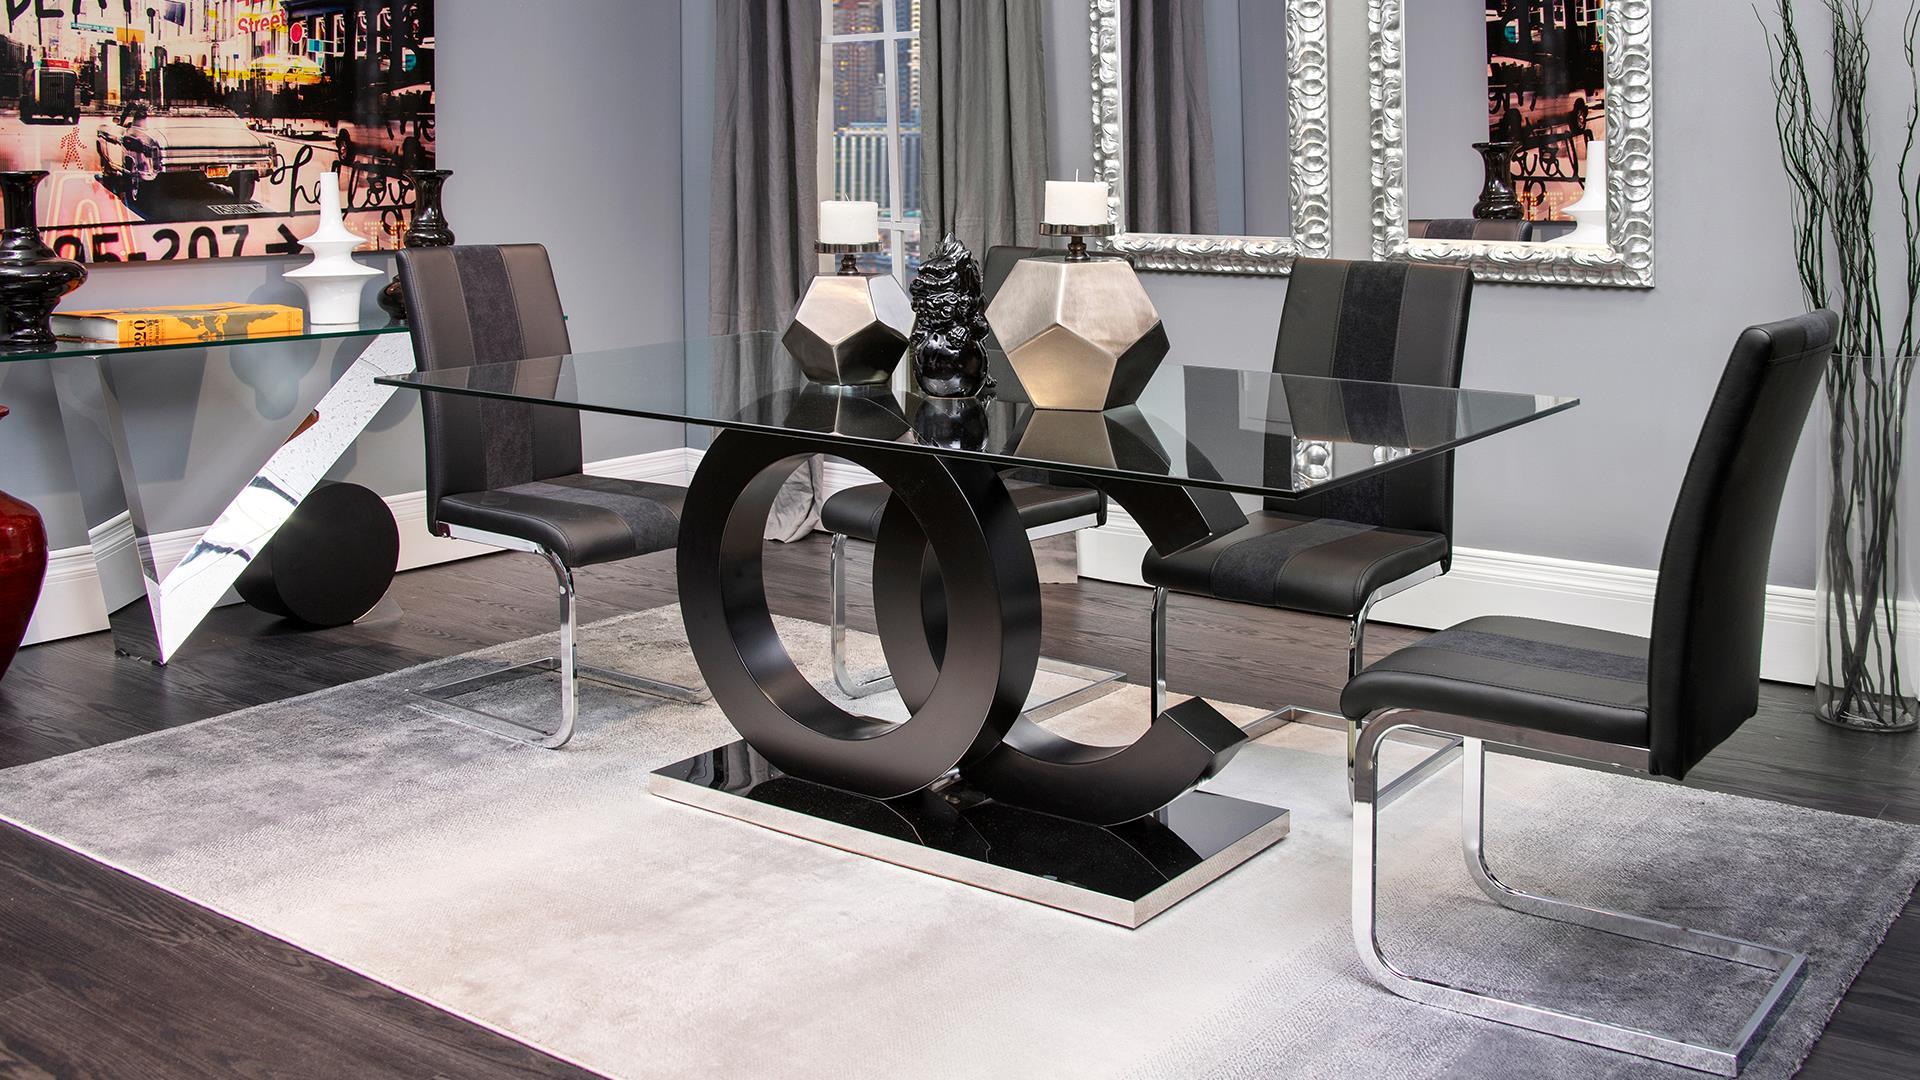 

    
D915DC-BLK-Set-2 D915DC-BLK Black Faux Leather & Fabric Dining Chair Set 2Pcs Global USA
